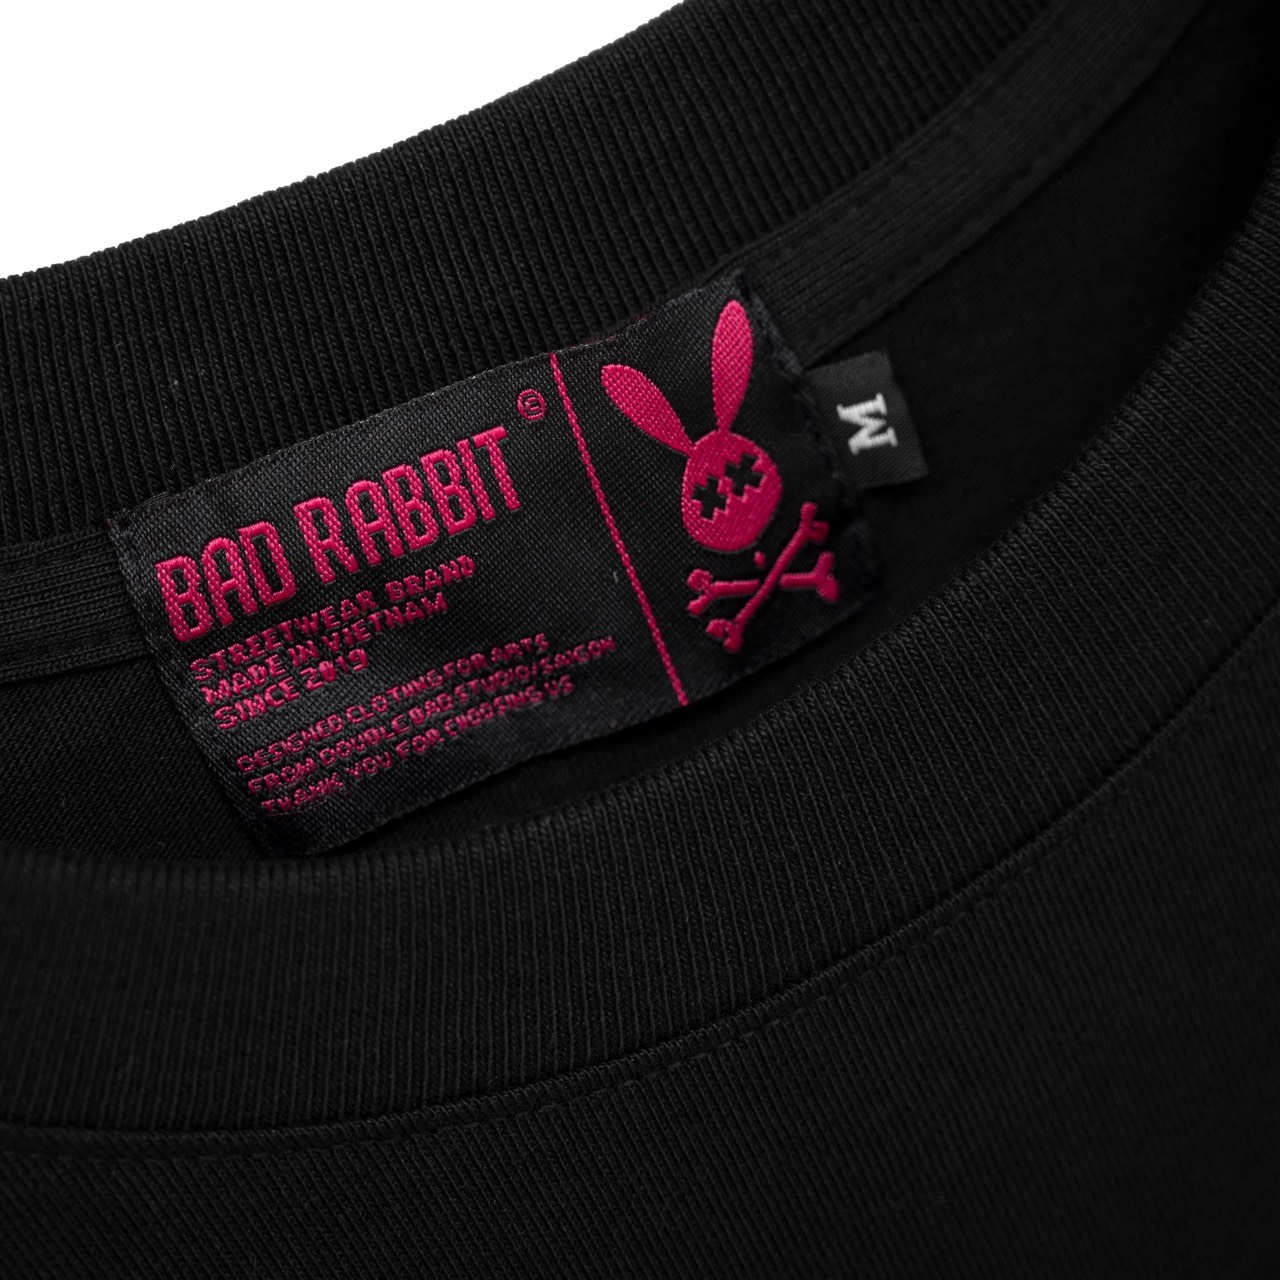 Áo thun Nam Nữ Bad Rabbit RABBIT GRAFFITI 100% Cotton - Local Brand Chính Hãng